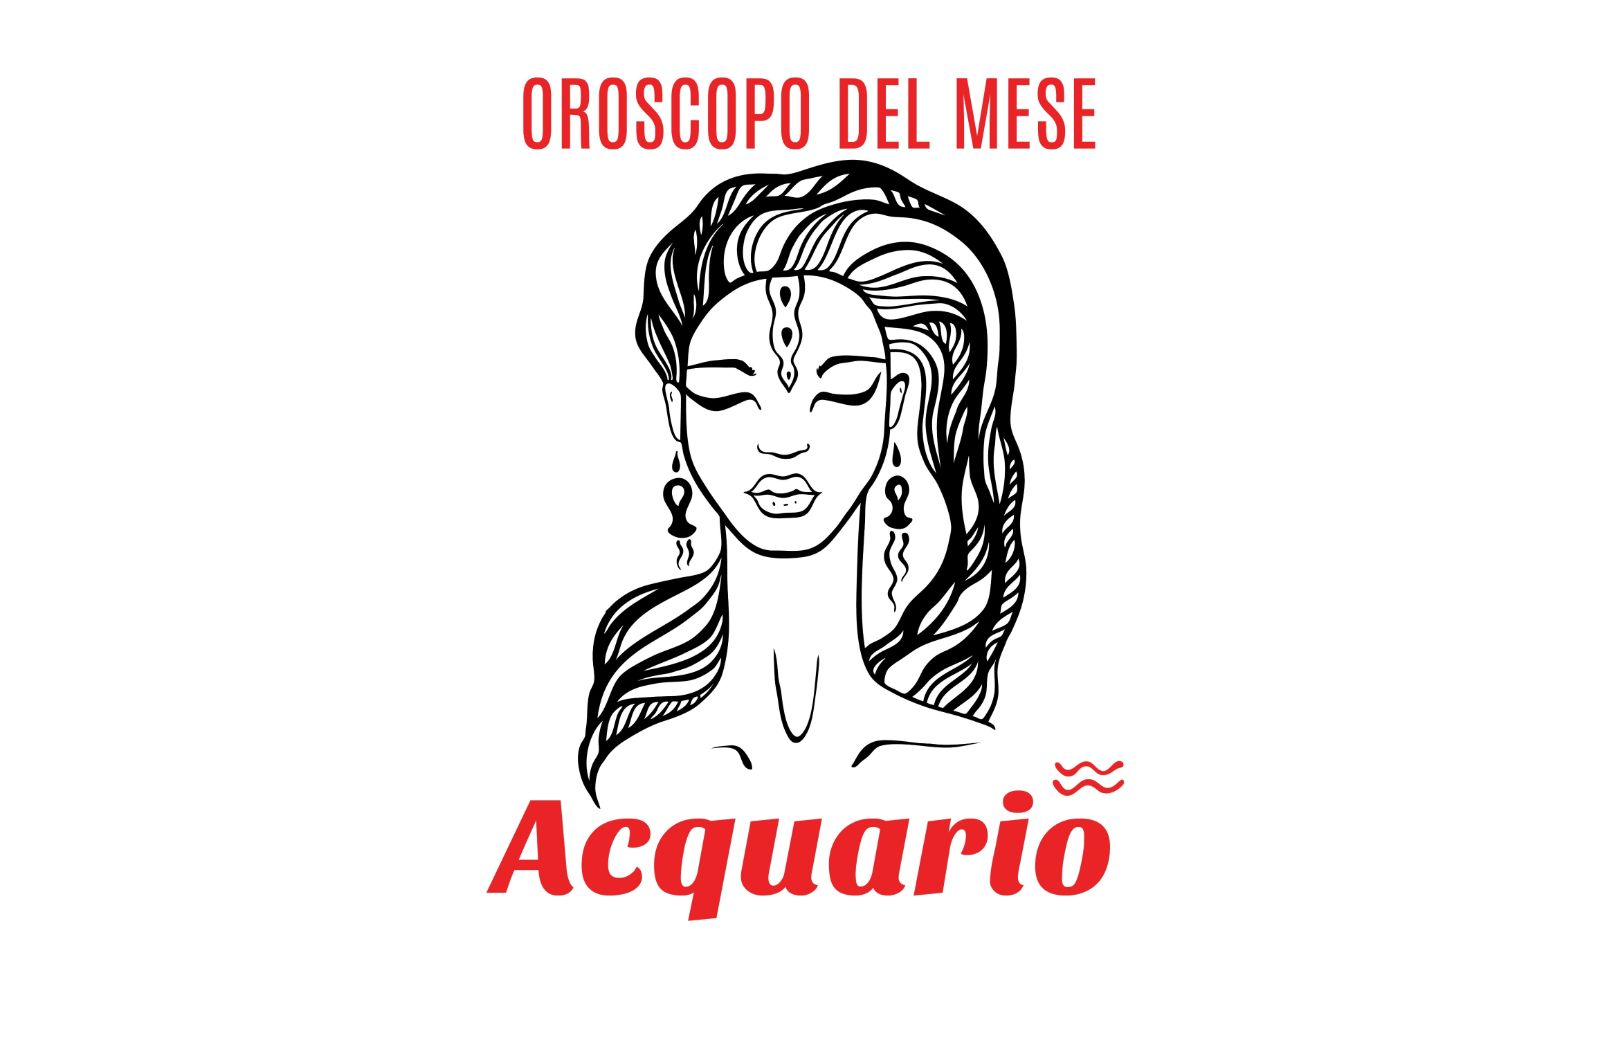 Oroscopo del mese: Acquario - settembre 2019